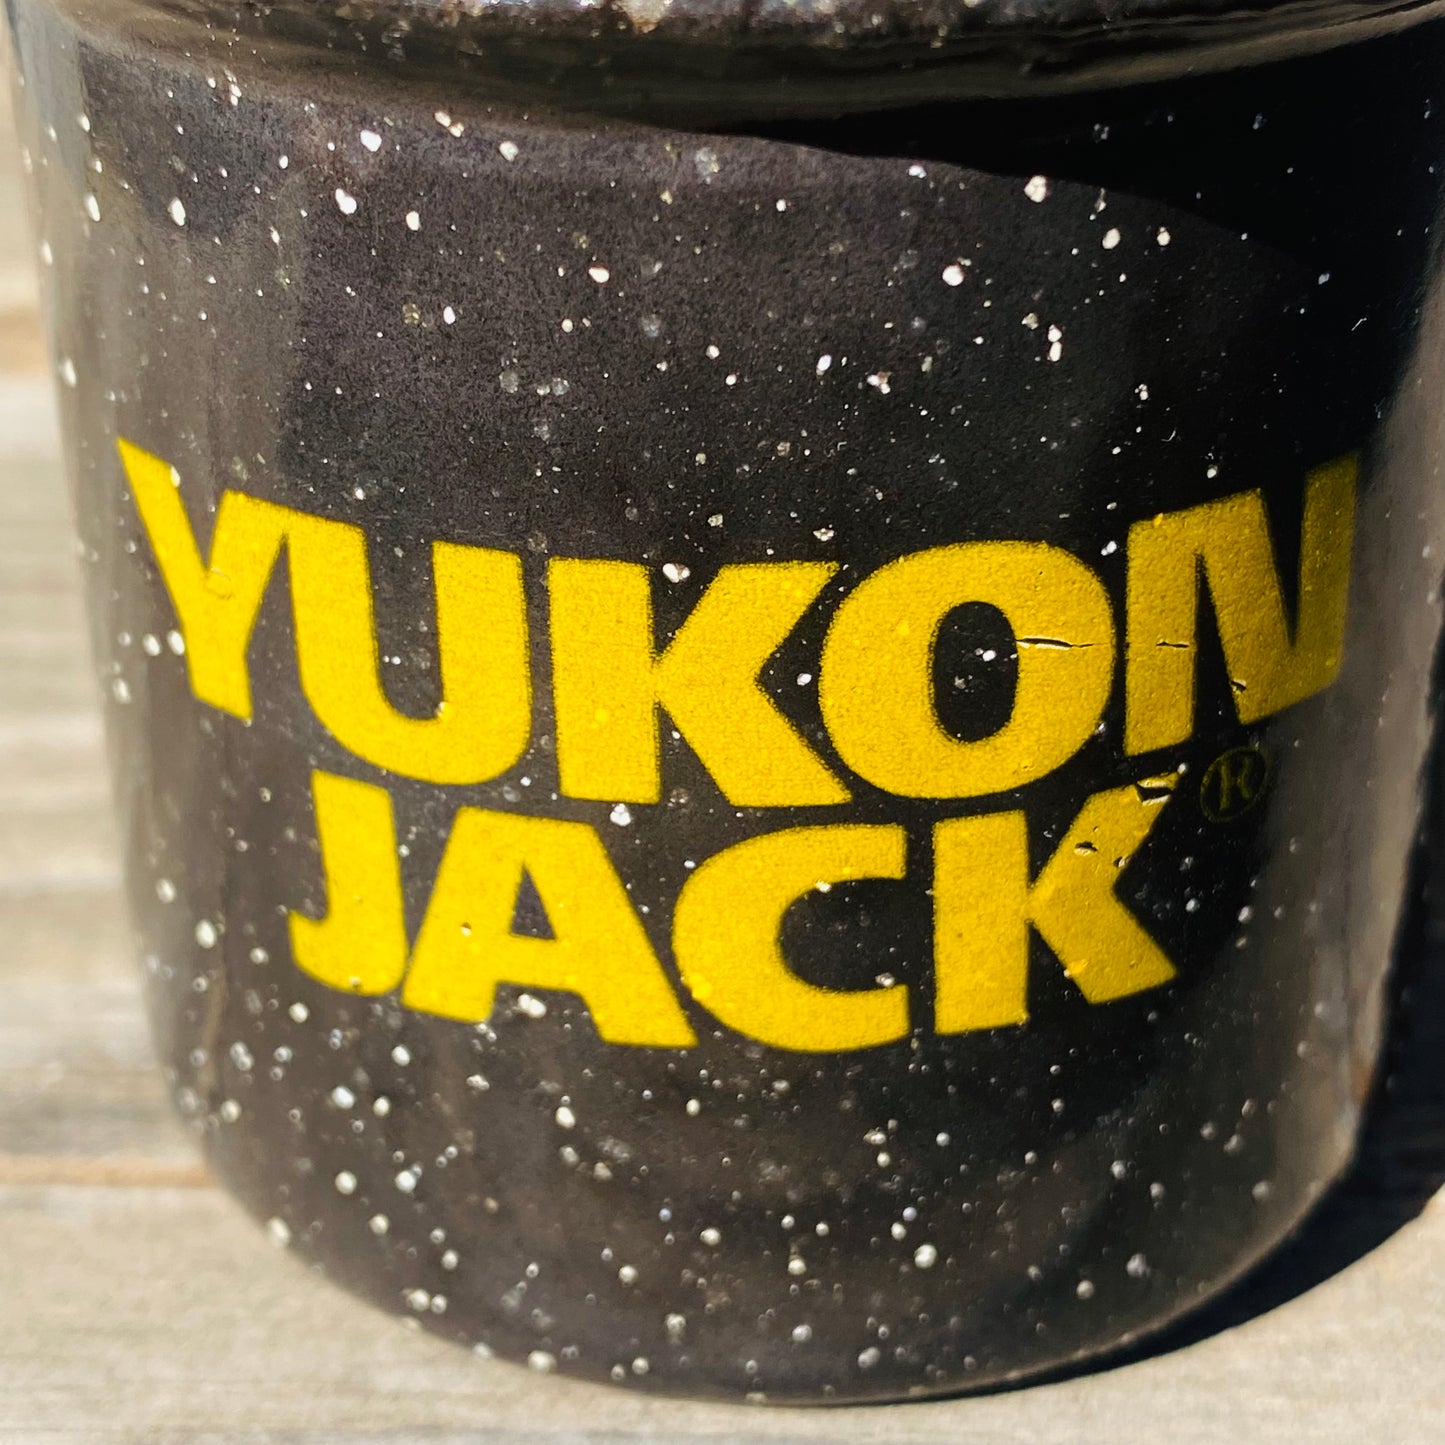 【USA vintage】“YUKON JACK” ユーコンジャック マグカップ